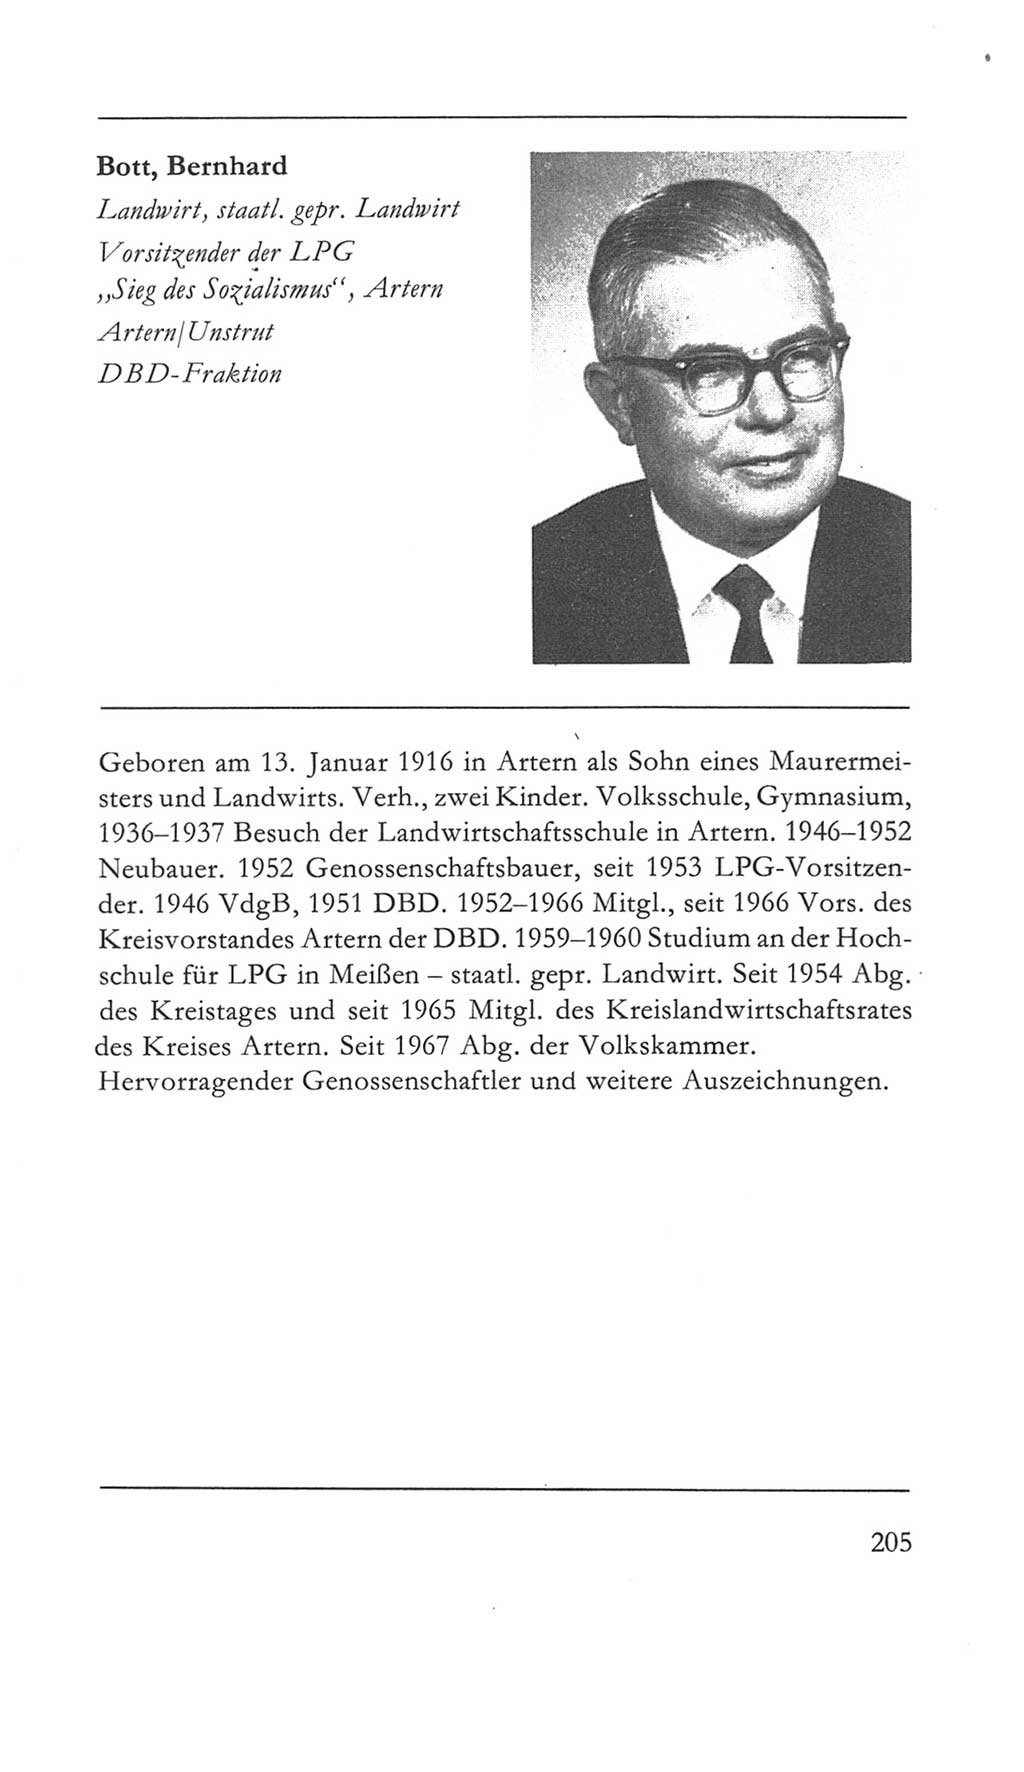 Volkskammer (VK) der Deutschen Demokratischen Republik (DDR) 5. Wahlperiode 1967-1971, Seite 205 (VK. DDR 5. WP. 1967-1971, S. 205)